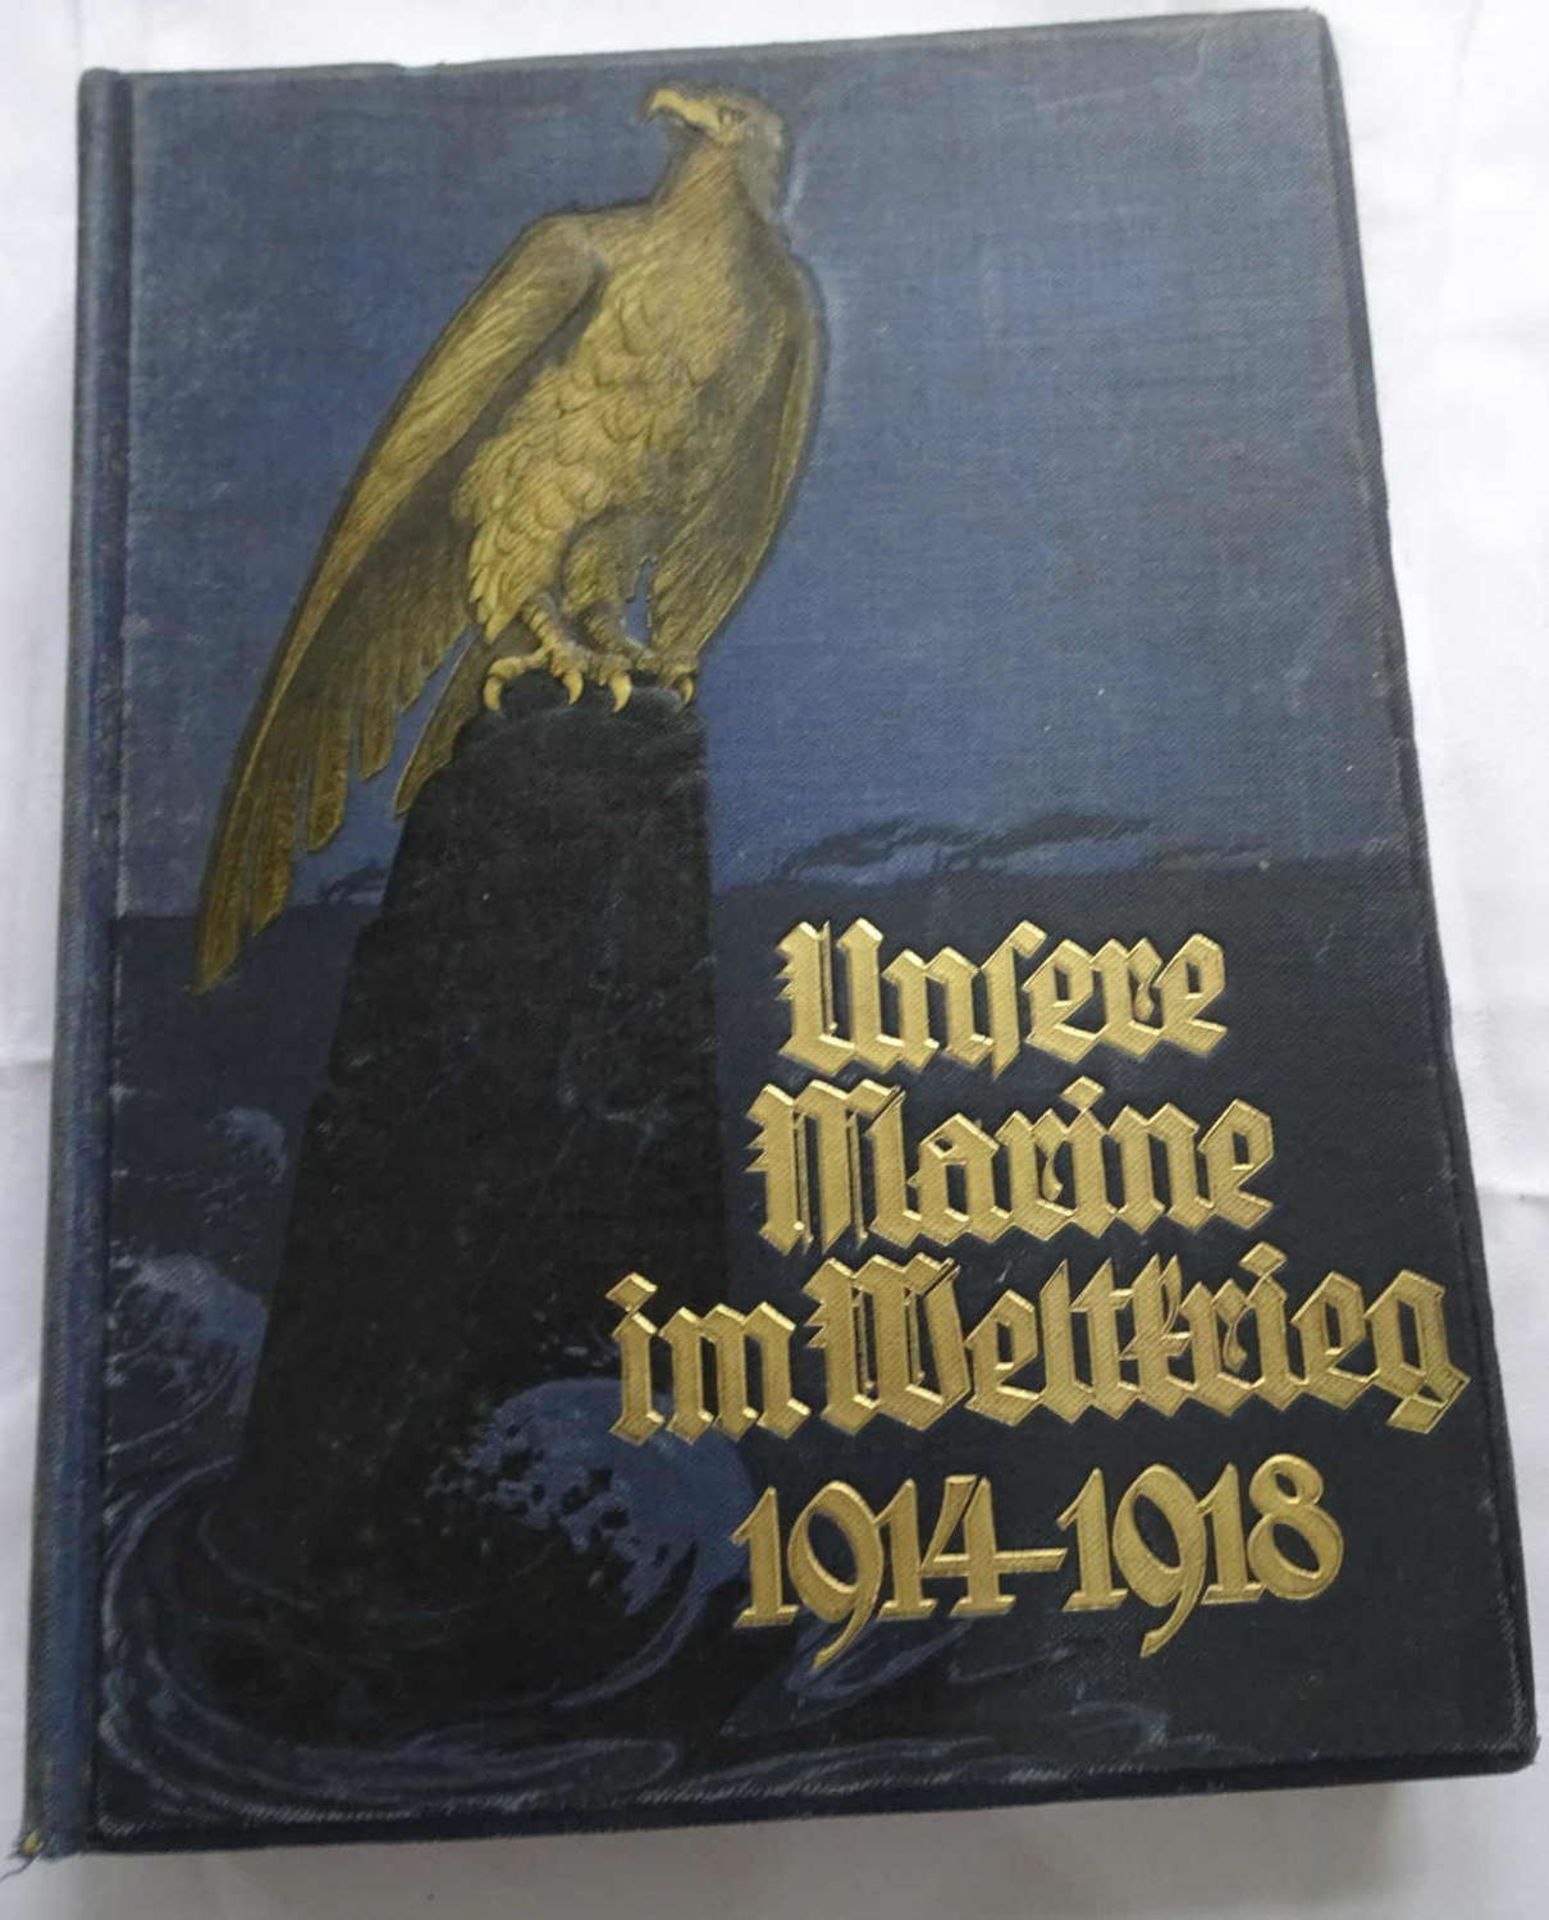 Eberhard von Mantey, Unsere Marine im Weltkrieg 1914-1918.Verlag C.A. Weller/Berlin, 1928.